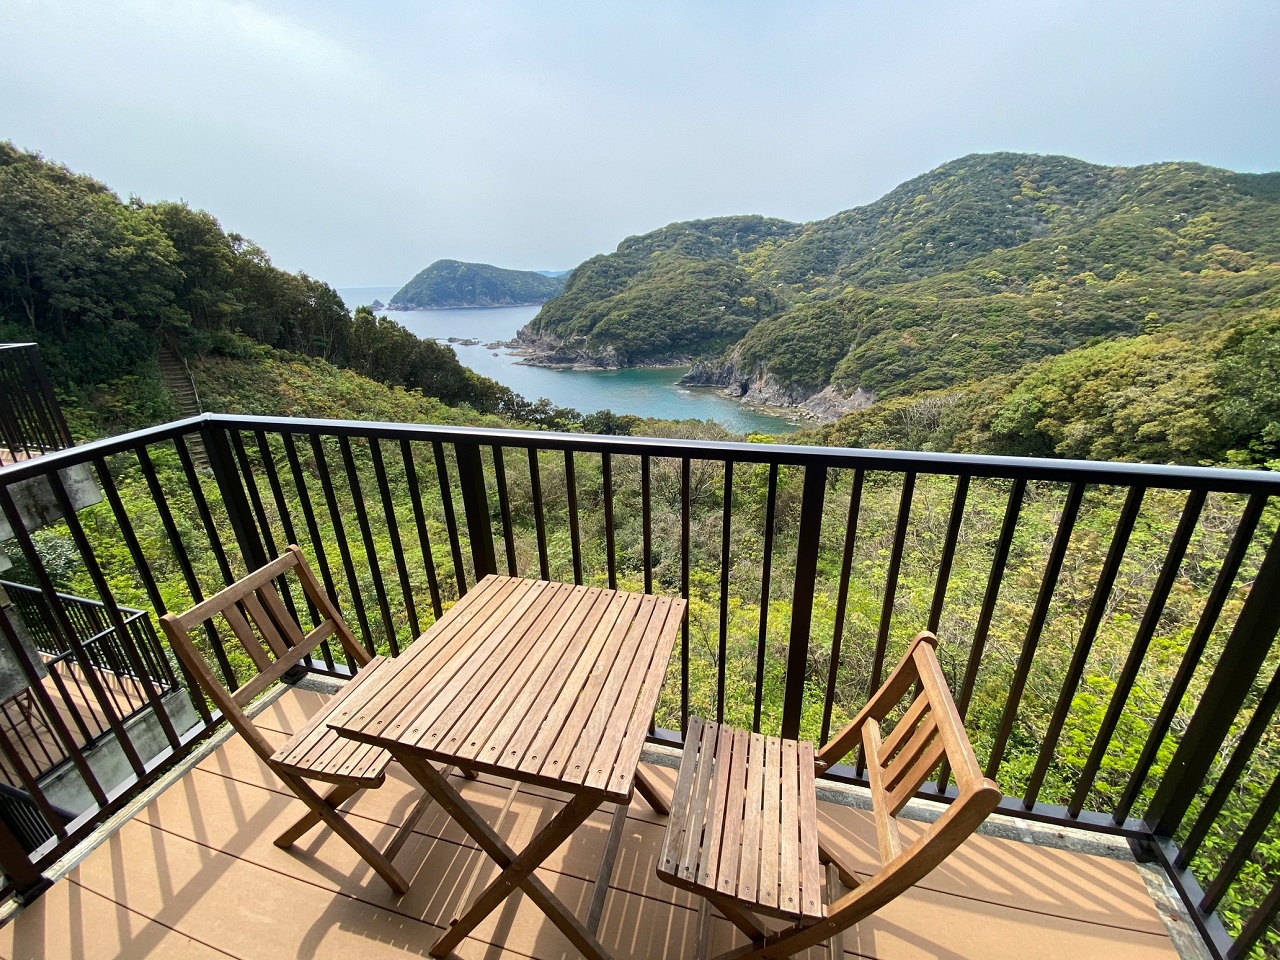 โรงแรม เกาะชิโกกุ เก้าอี้นั่งพักผ่อน วิวทะเล ระเบียง View